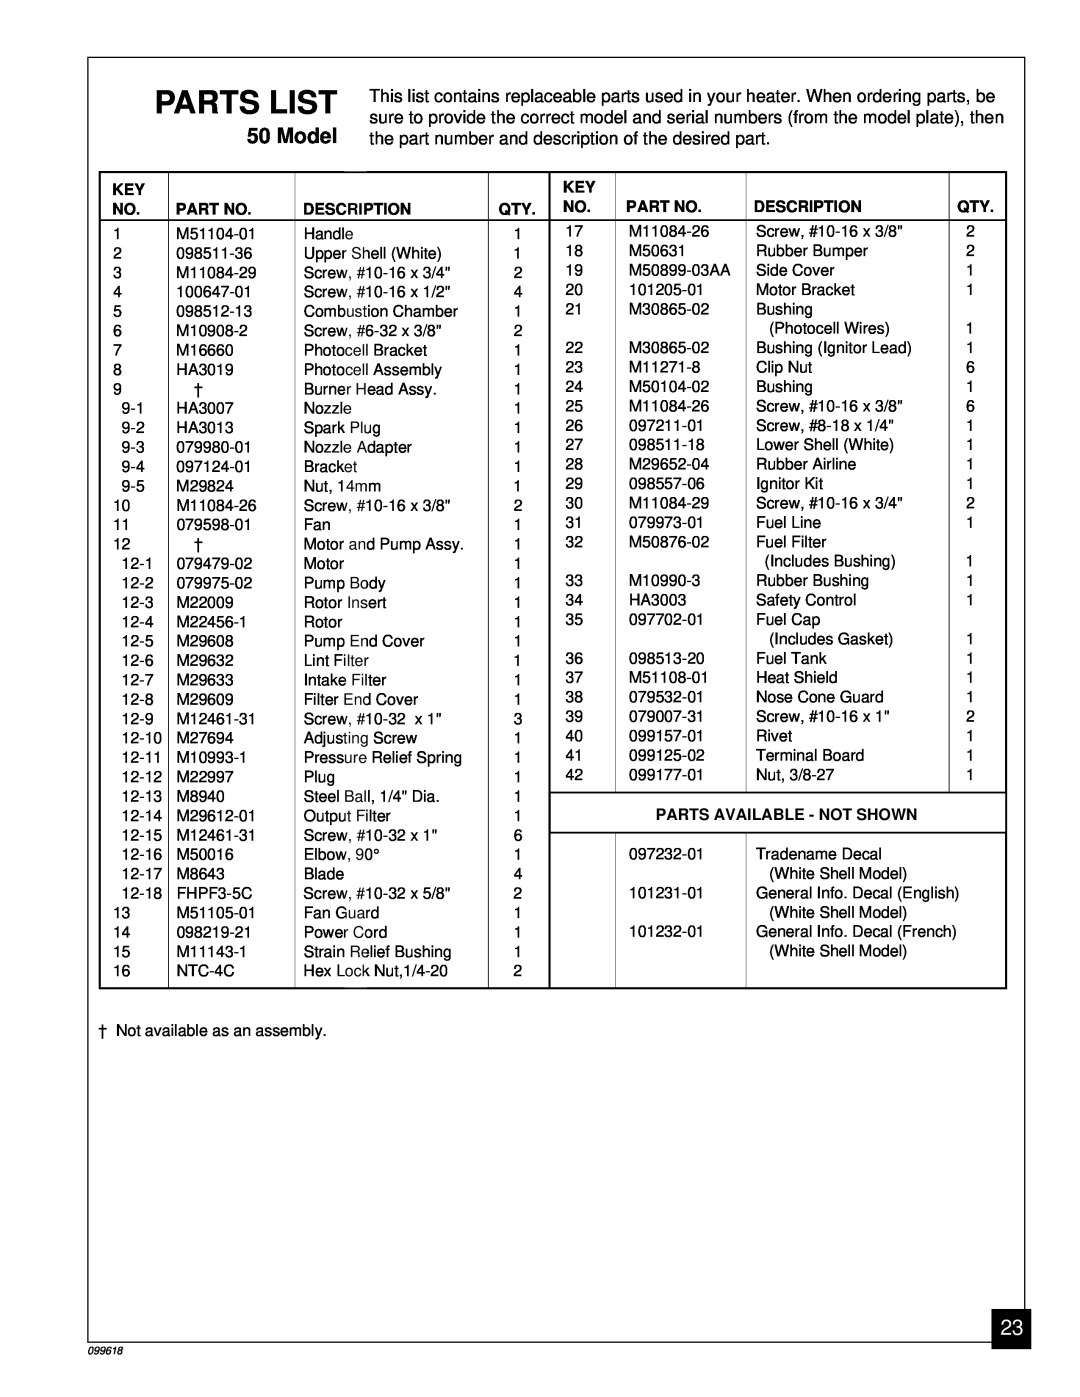 Desa 50 owner manual Parts List, Description, Parts Available - Not Shown 